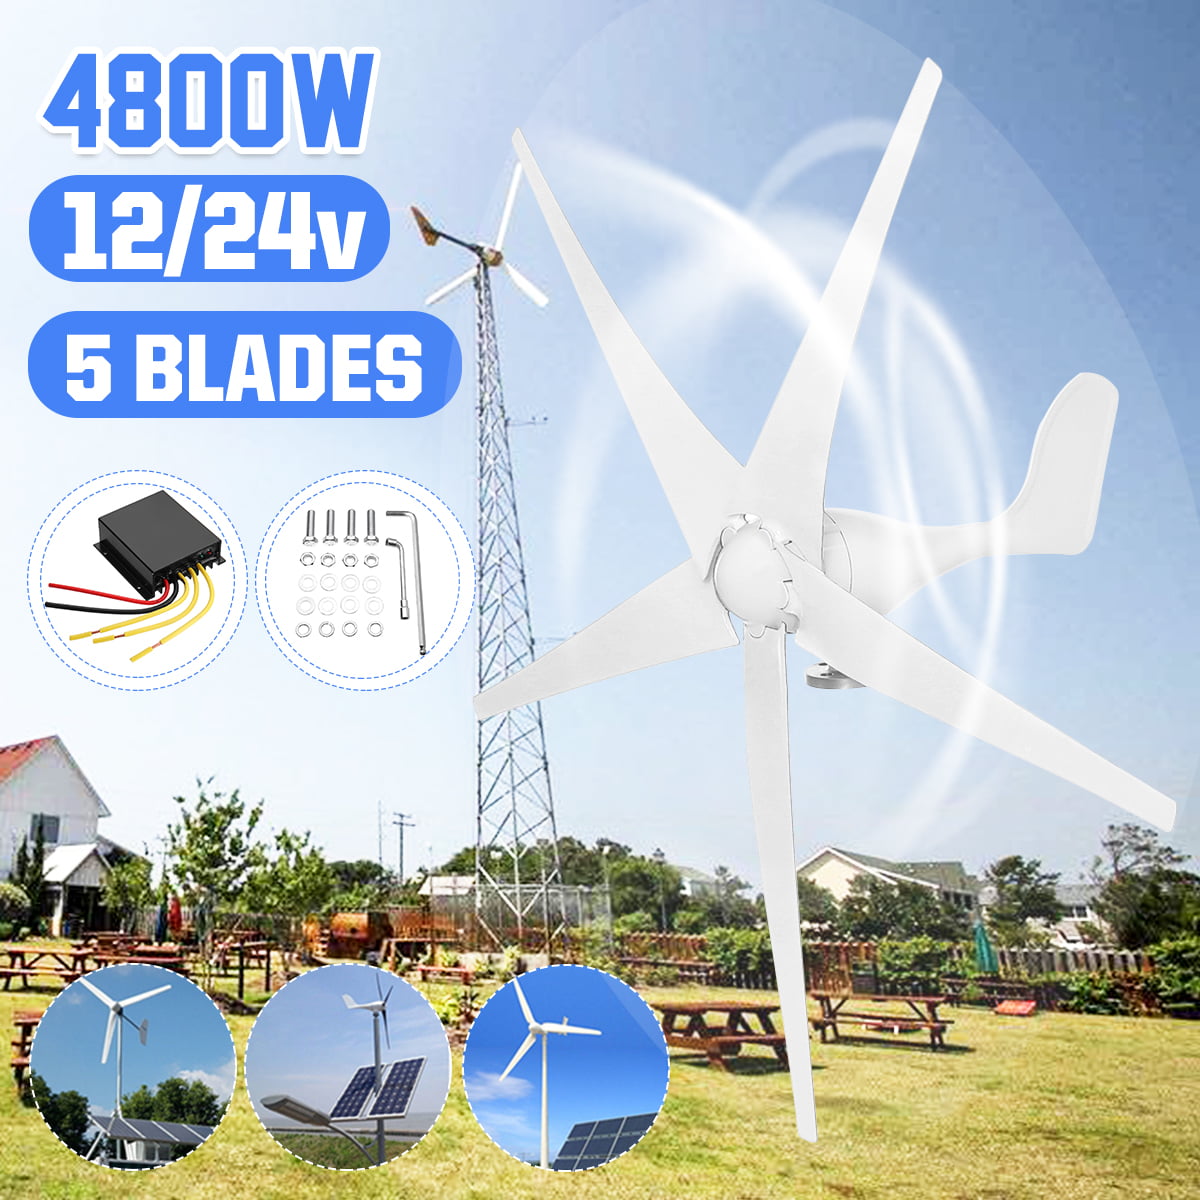 5 Blades Max 500W Wind Turbine Generator Kit Max DC 24V Option Aerogenerator NEW 